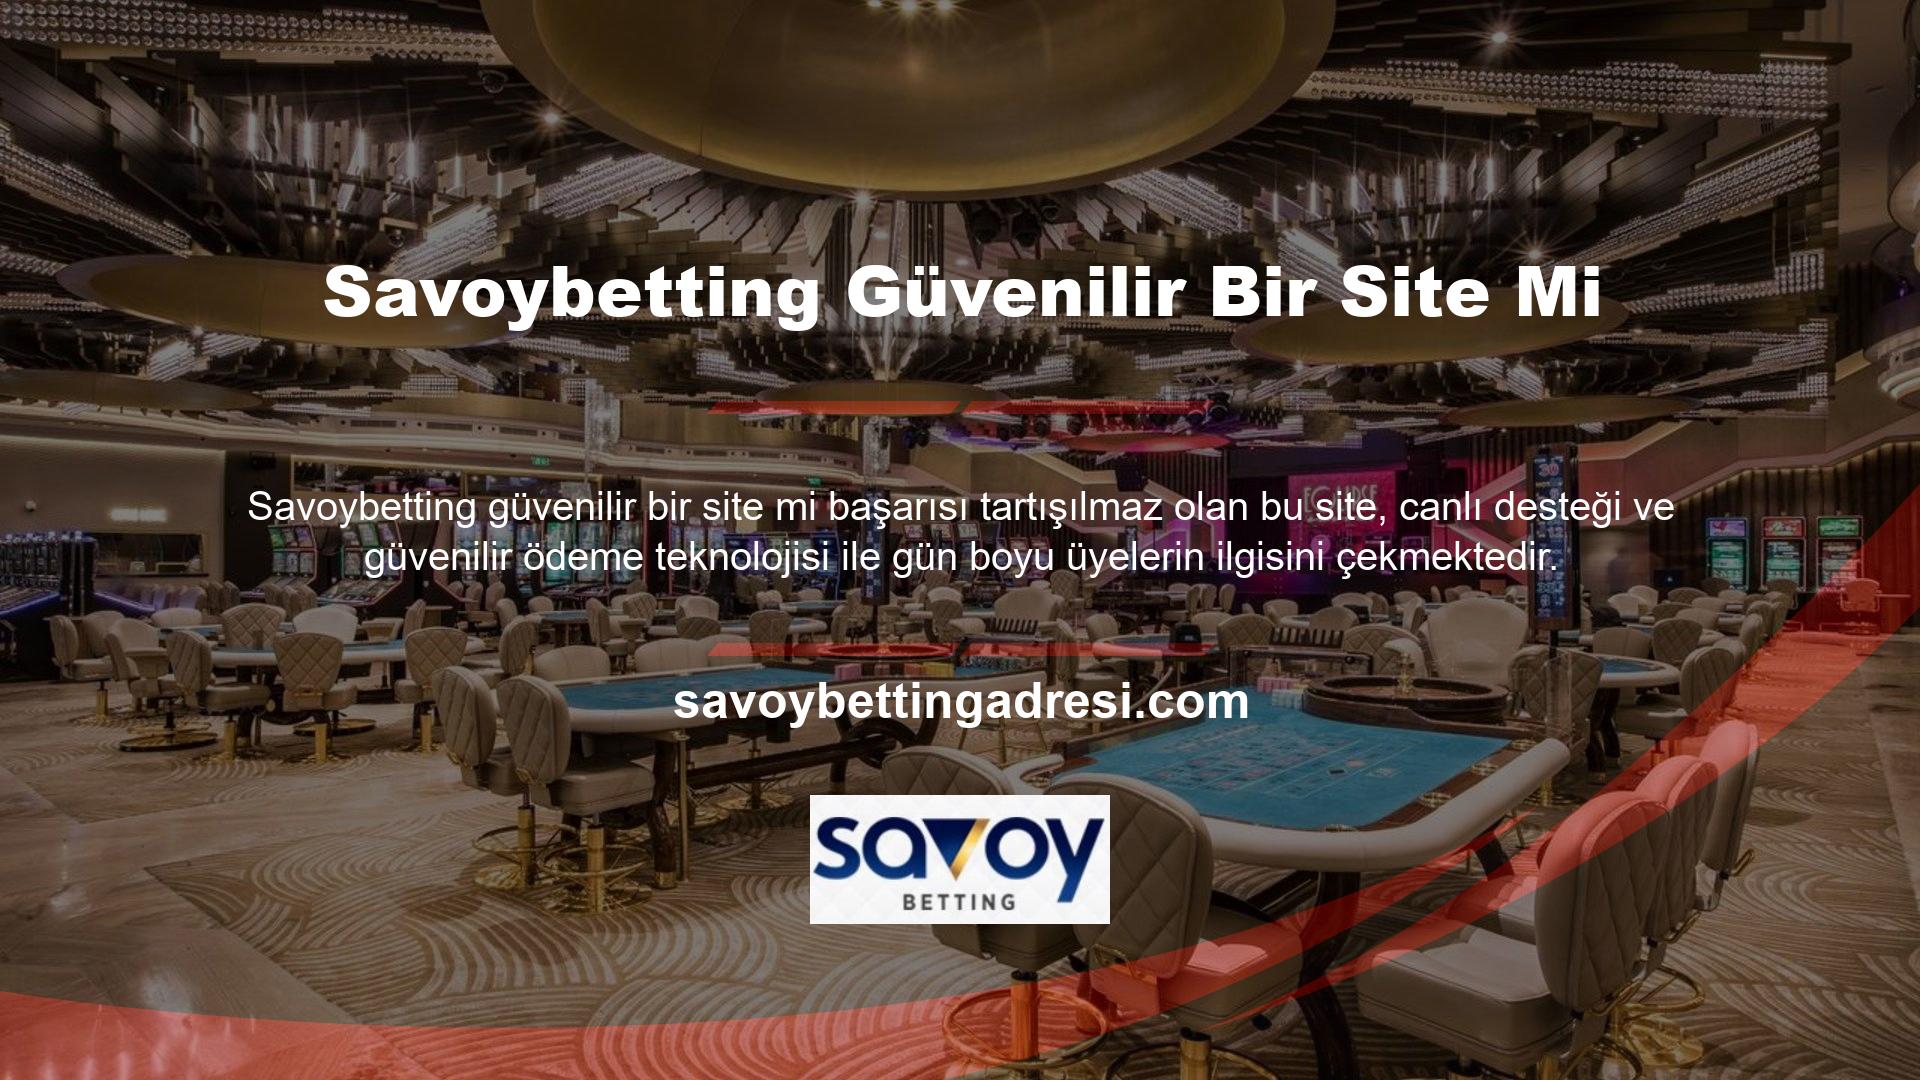 Savoybetting Cep Telefonu  Güvenilir Bir Site MiSavoybetting mobil sitesi, geliştirilmiş kullanıcı arayüzü ile tüm üyelere hitap etmektedir